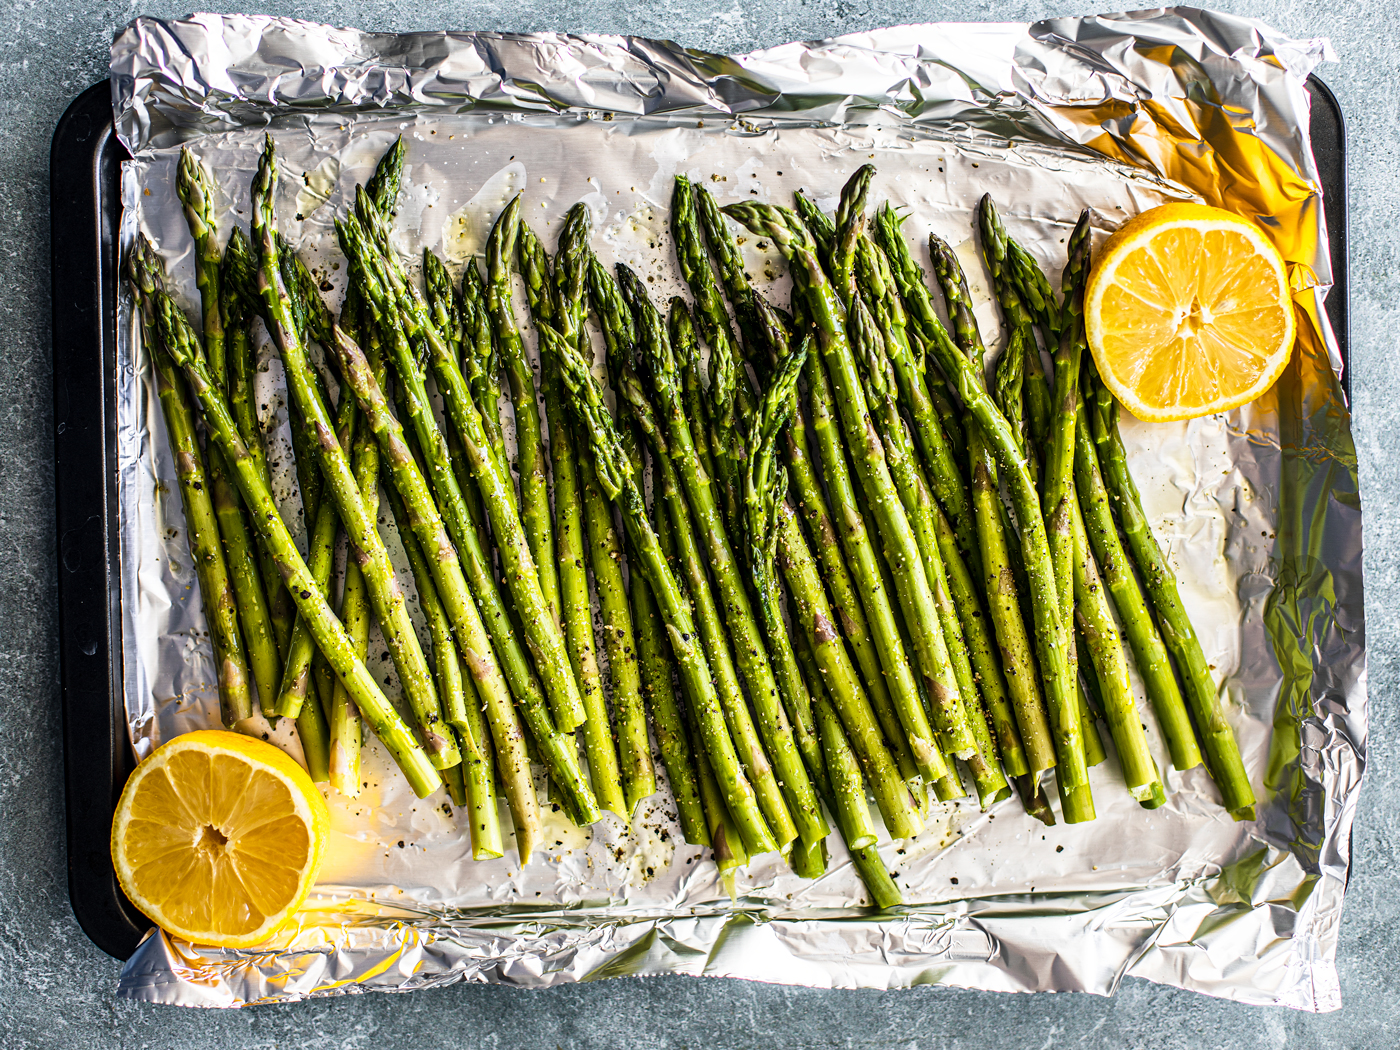 Raw and seasoned asparagus spears on tin foil with lemon halves.